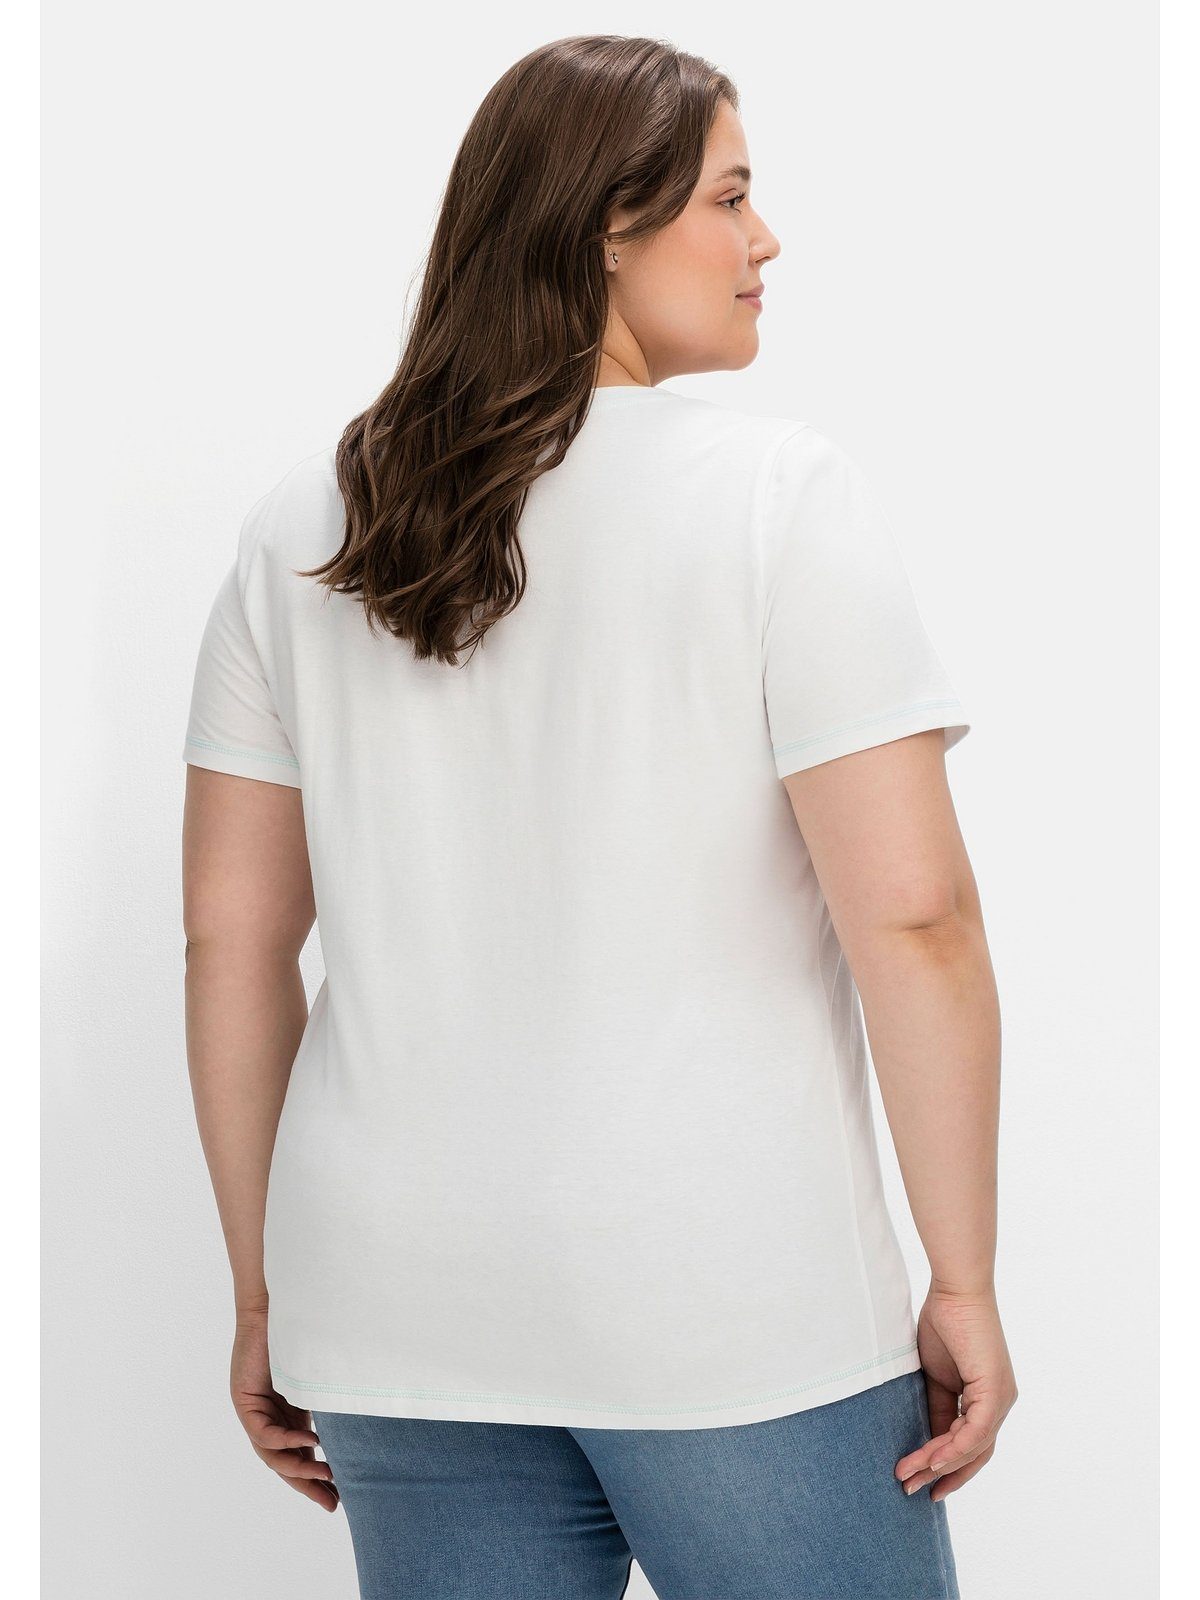 Wordingprint, Sheego leicht mit tailliert Große bedruckt weiß T-Shirt Größen